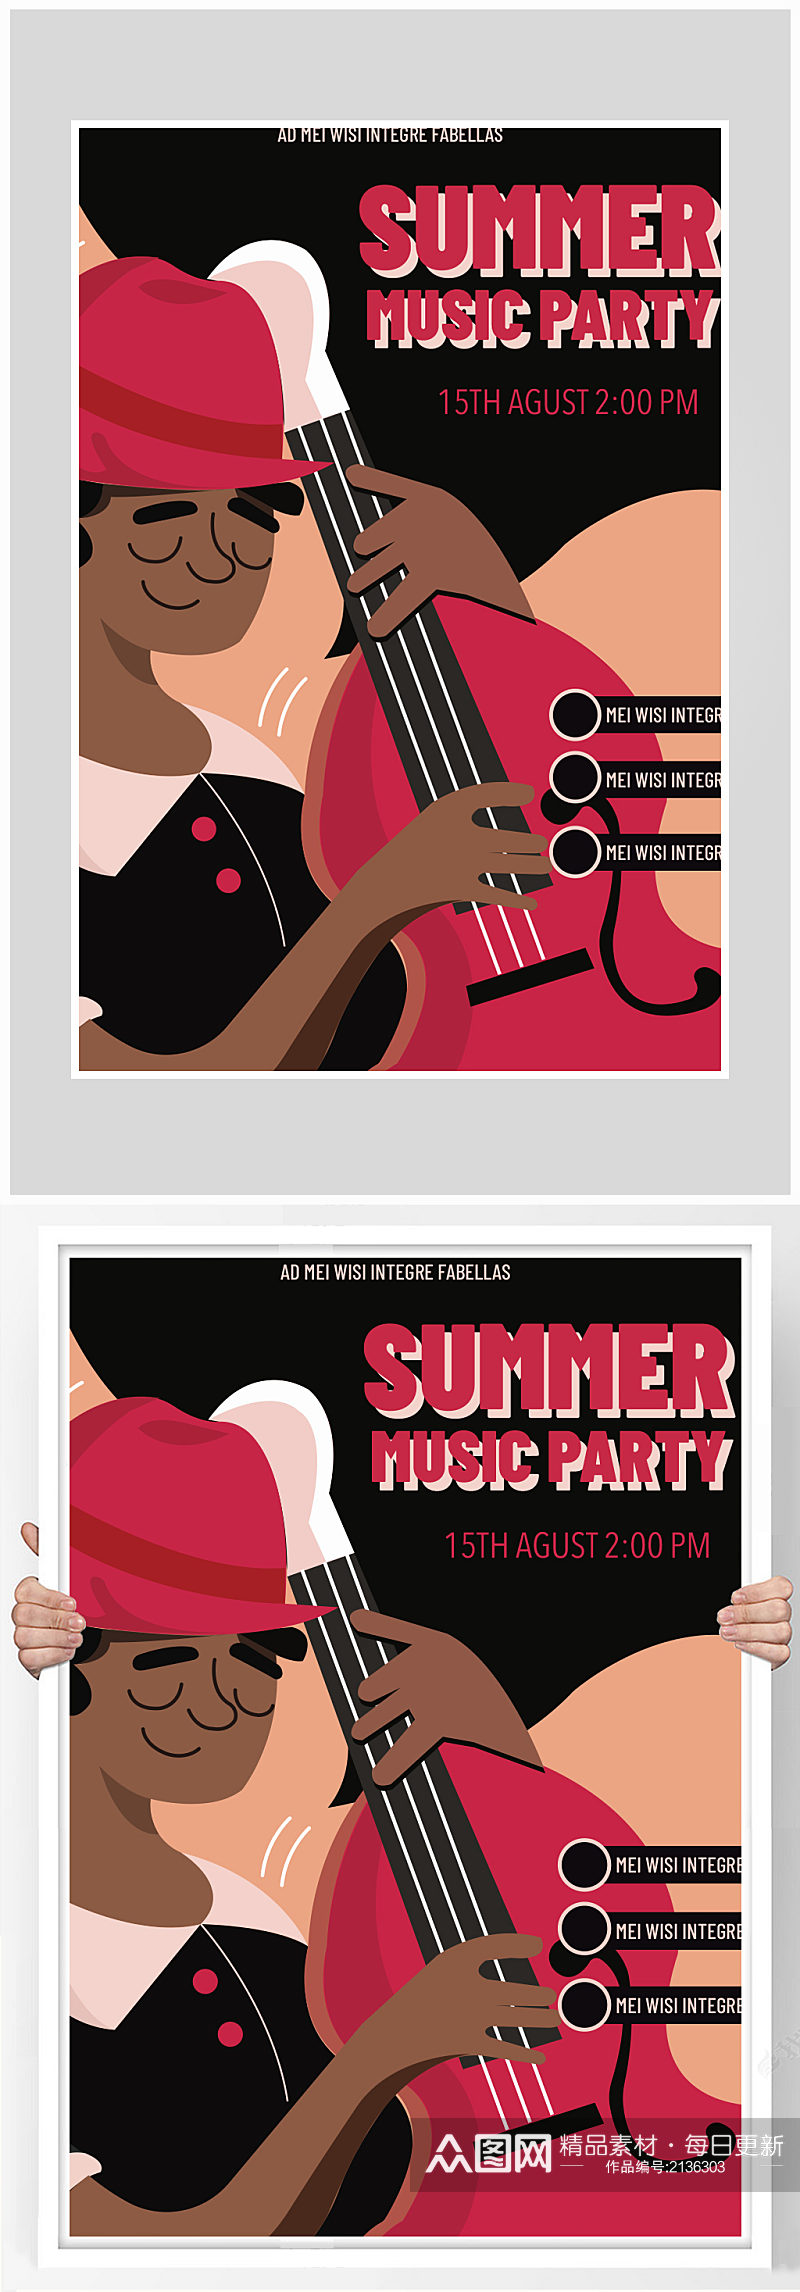 创意质感音乐夏季派对海报设计素材